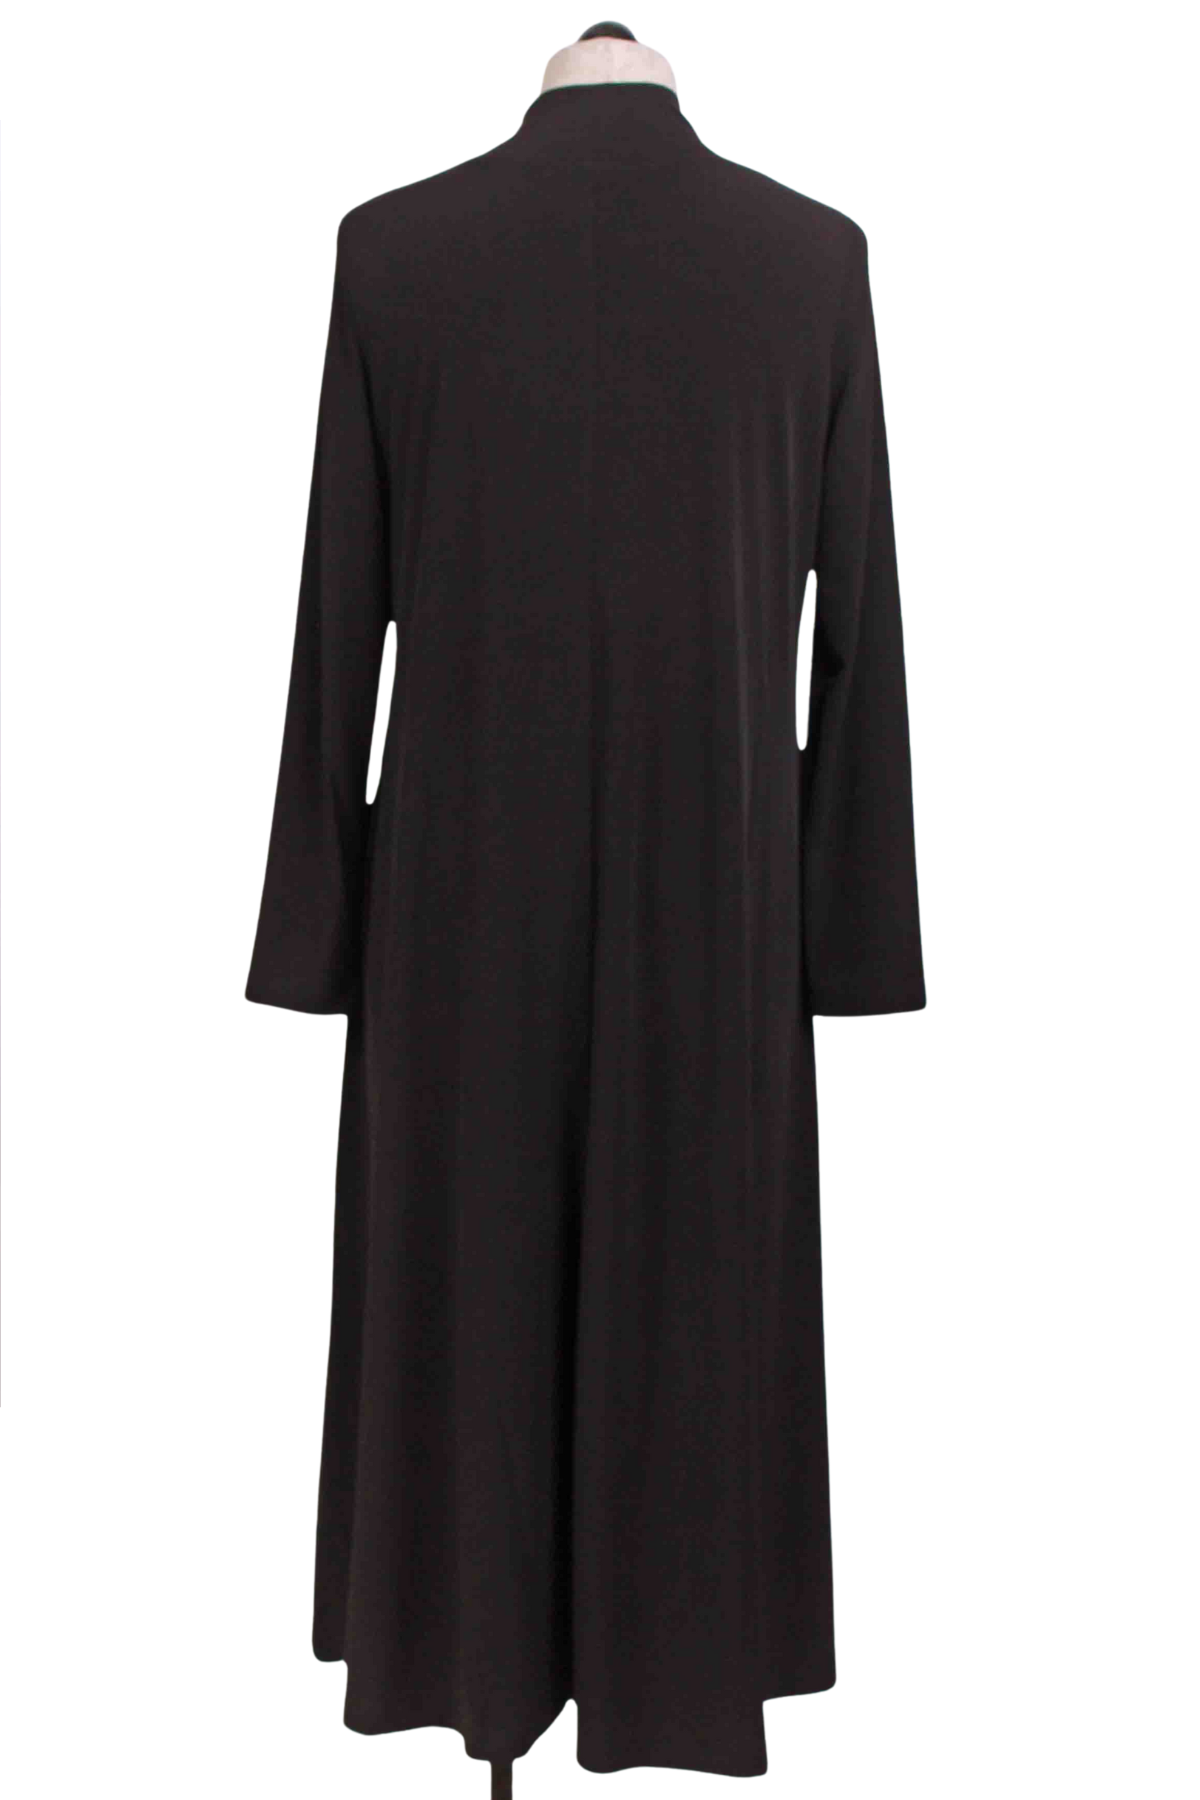 back view of Black A Line Jersey Knit Dress by Alembika